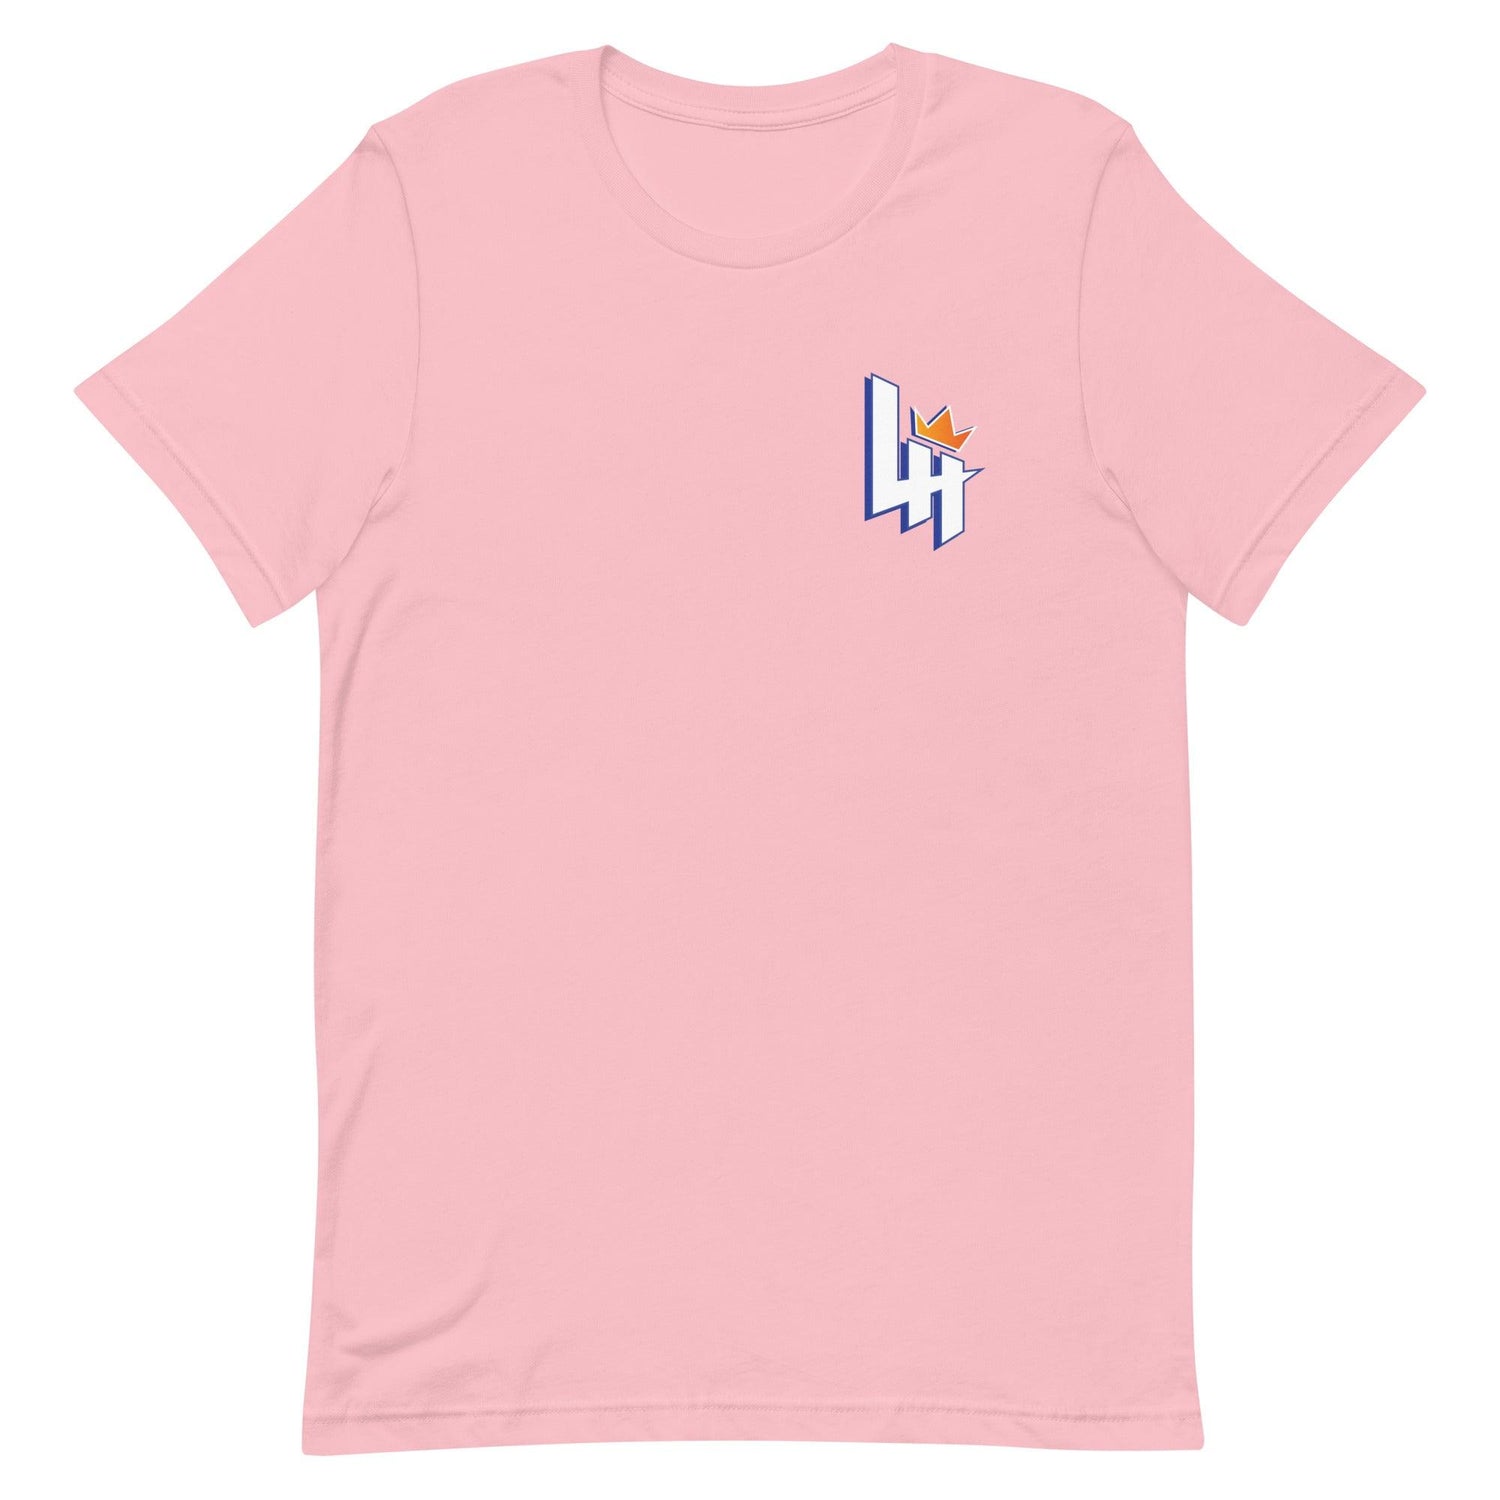 Lyndell Hudson II "Essential" t-shirt - Fan Arch